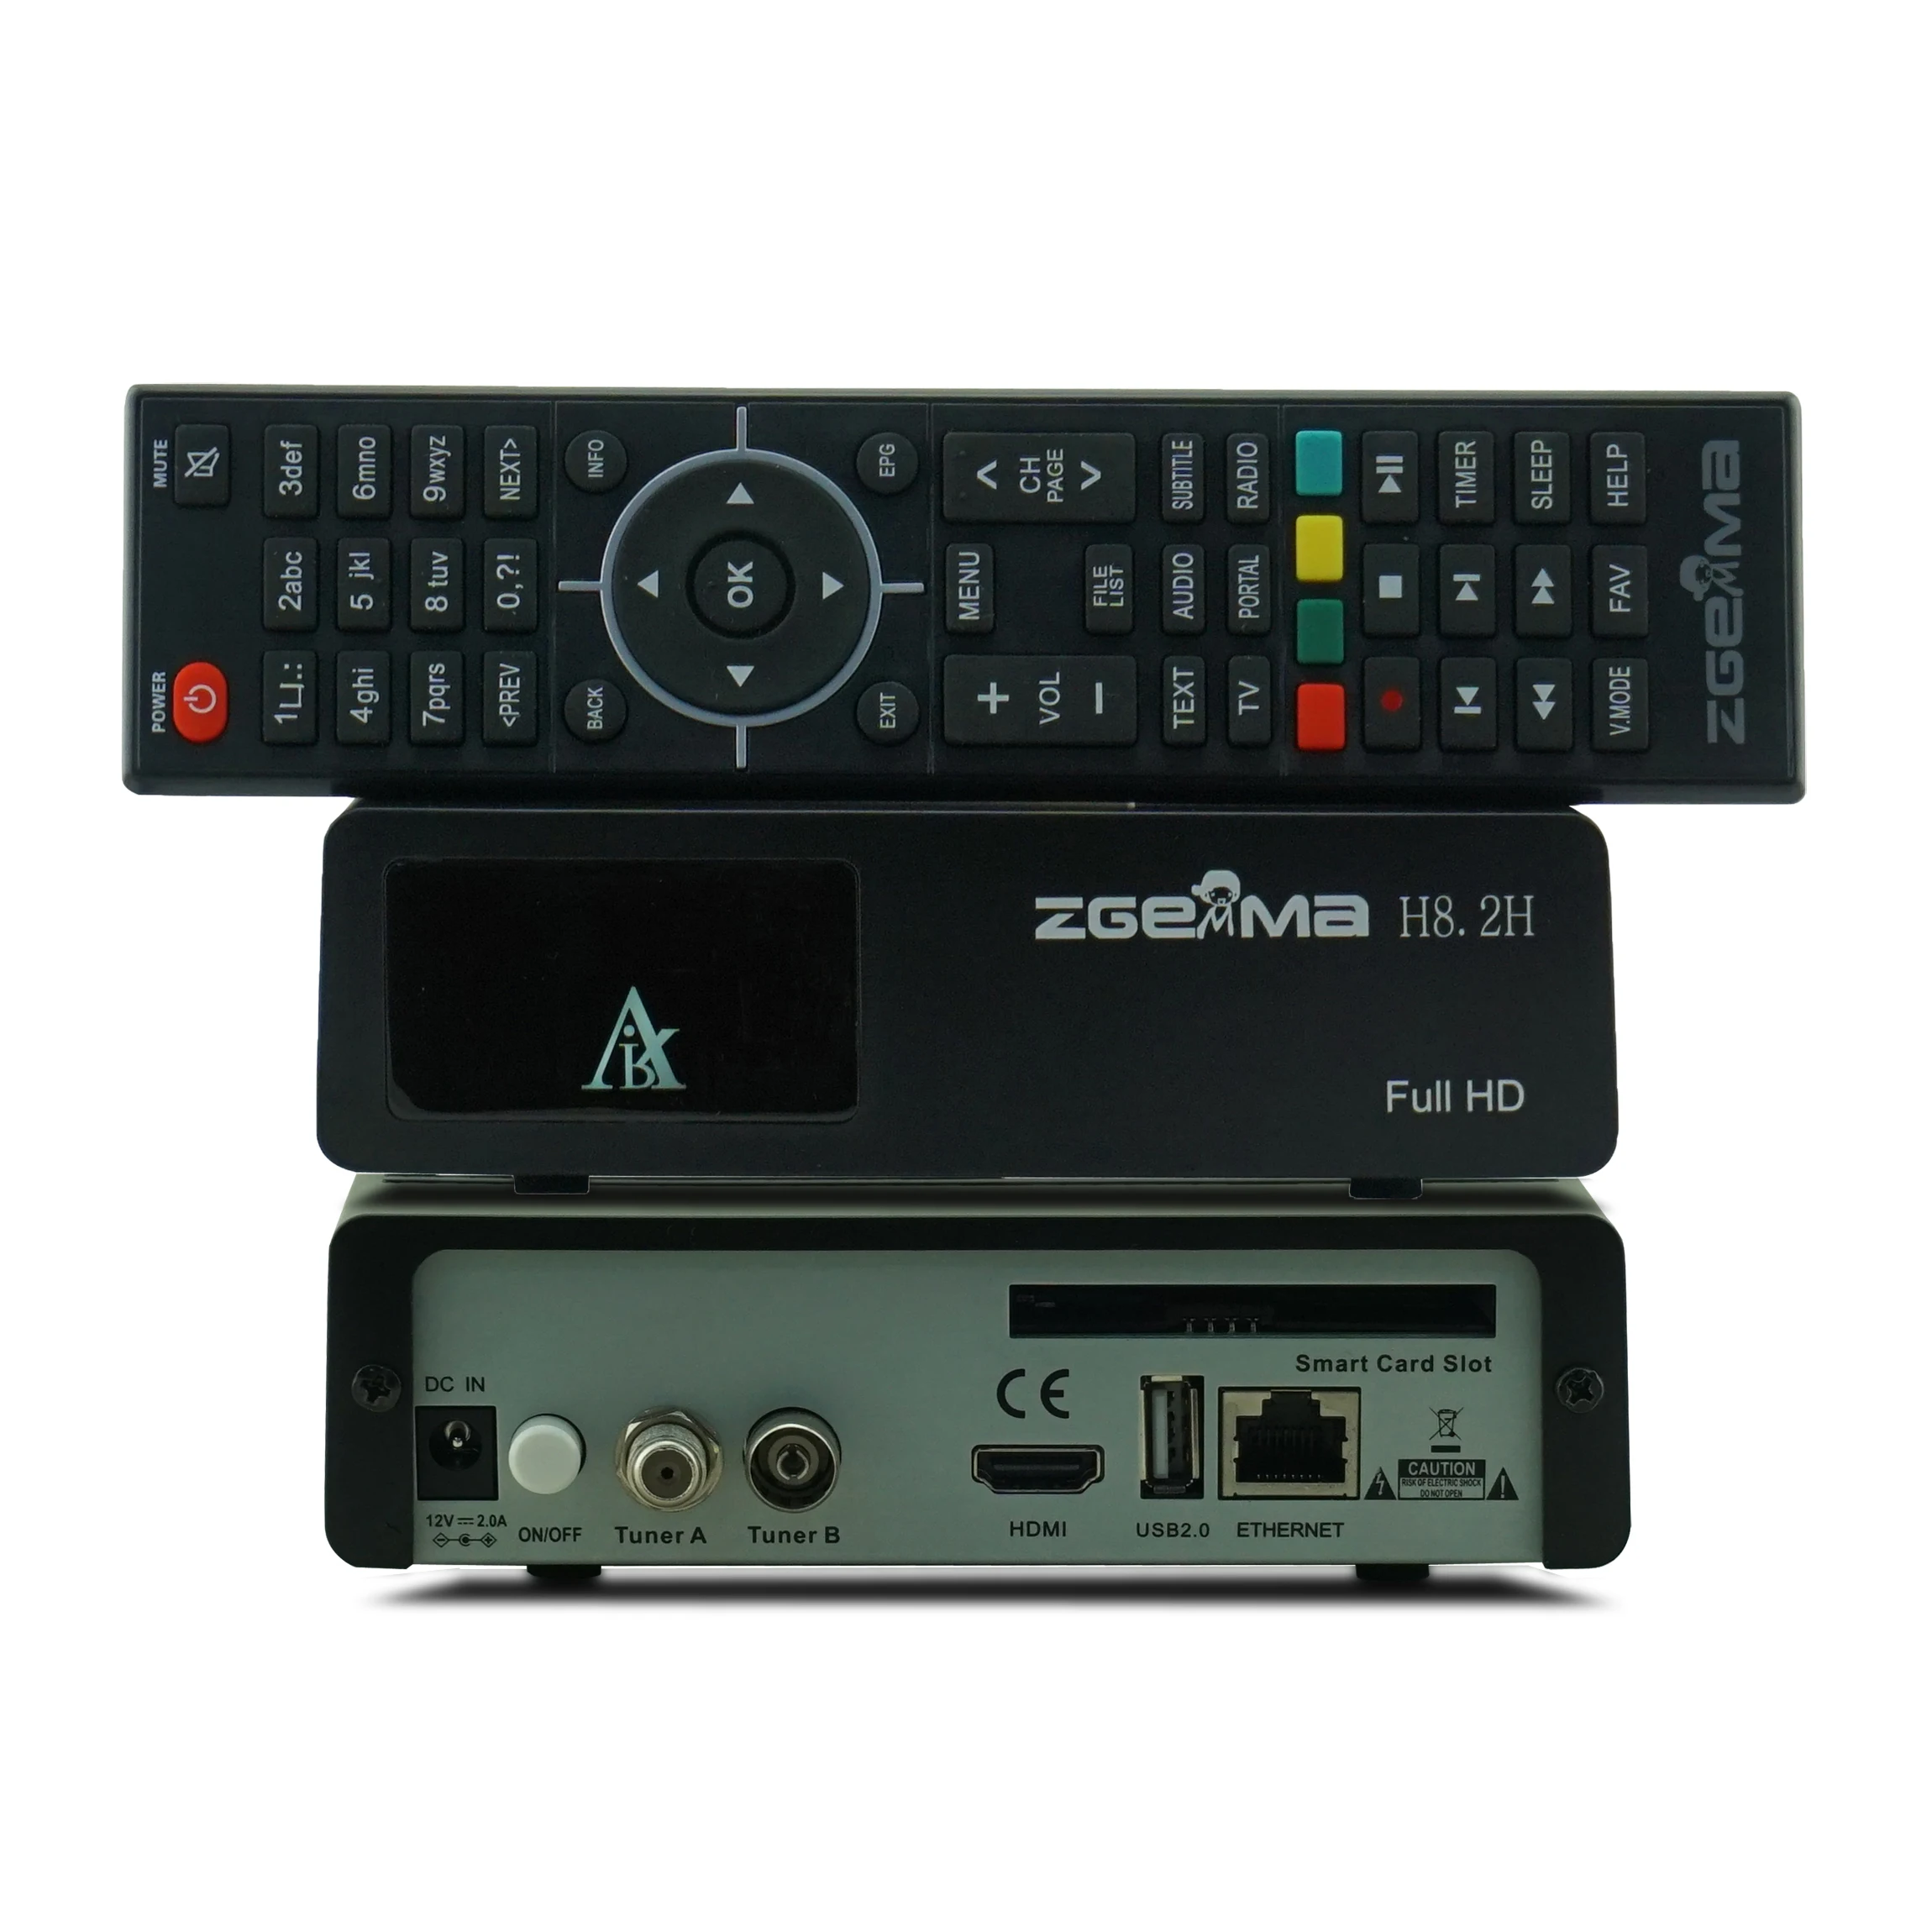 חדש Zgemma H8.2H FULL HD הלוויין עם DVB-S2X + DVB-T2/C משולב טיונר מובנה לינוקס מערכת HDMI 2.0 USB2.0 לווין.